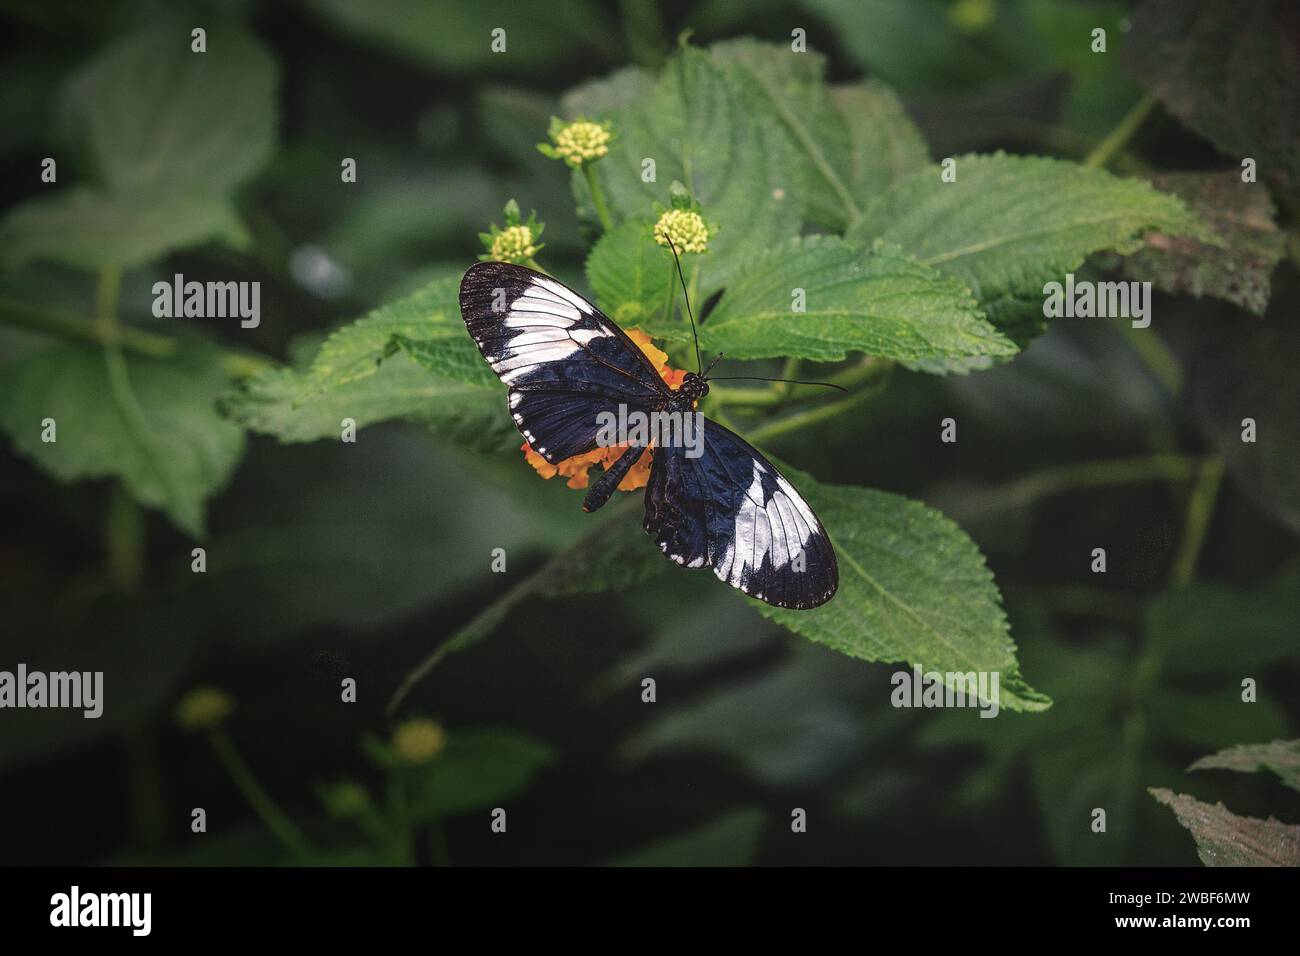 Una mariposa negra con manchas naranjas y blancas en una hoja verde, el zoológico de Krefeld, Krefeld, Renania del Norte-Westfalia, Alemania Foto de stock